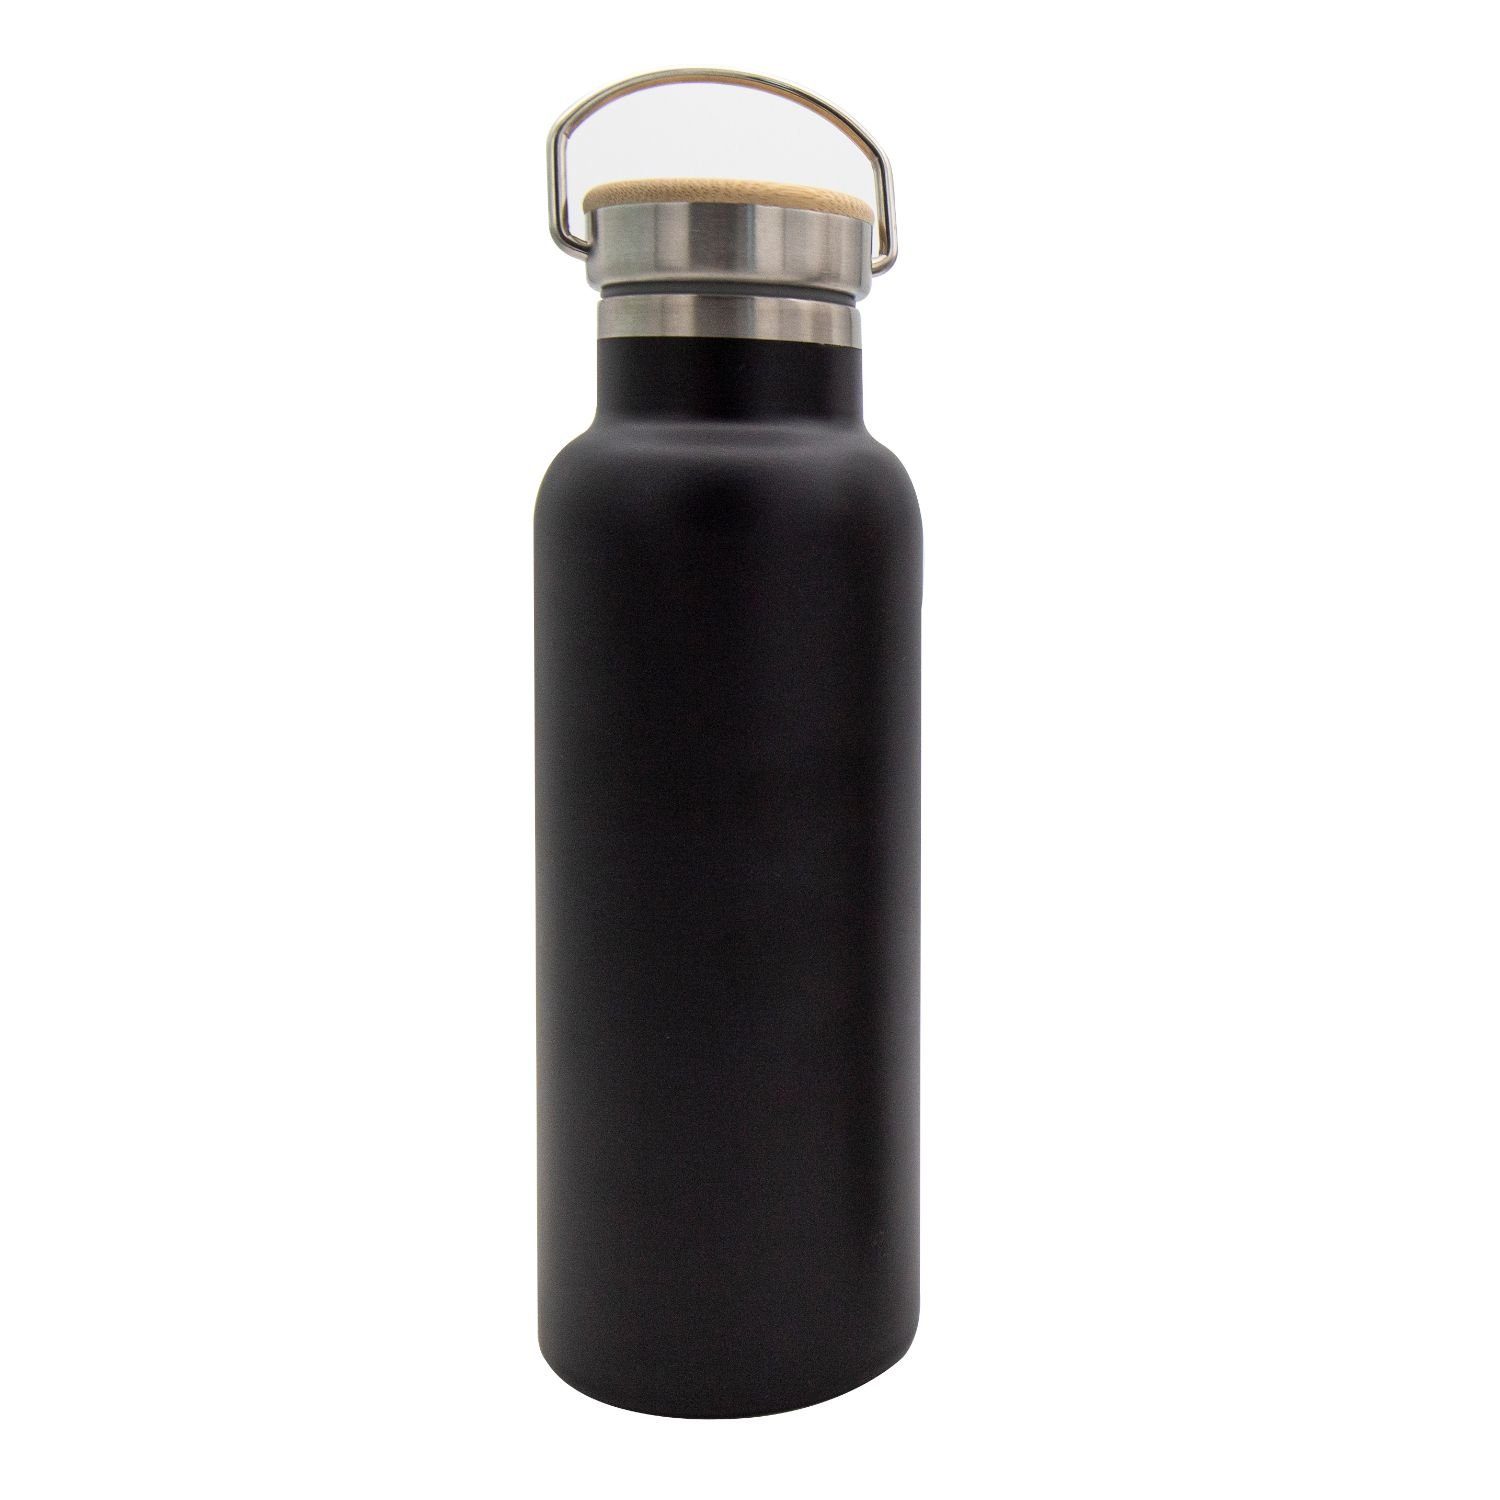 Steuber Thermoflasche, Isolierflasche im Design einer Milchkanne, doppelwandiger Edelstahl Schwarz